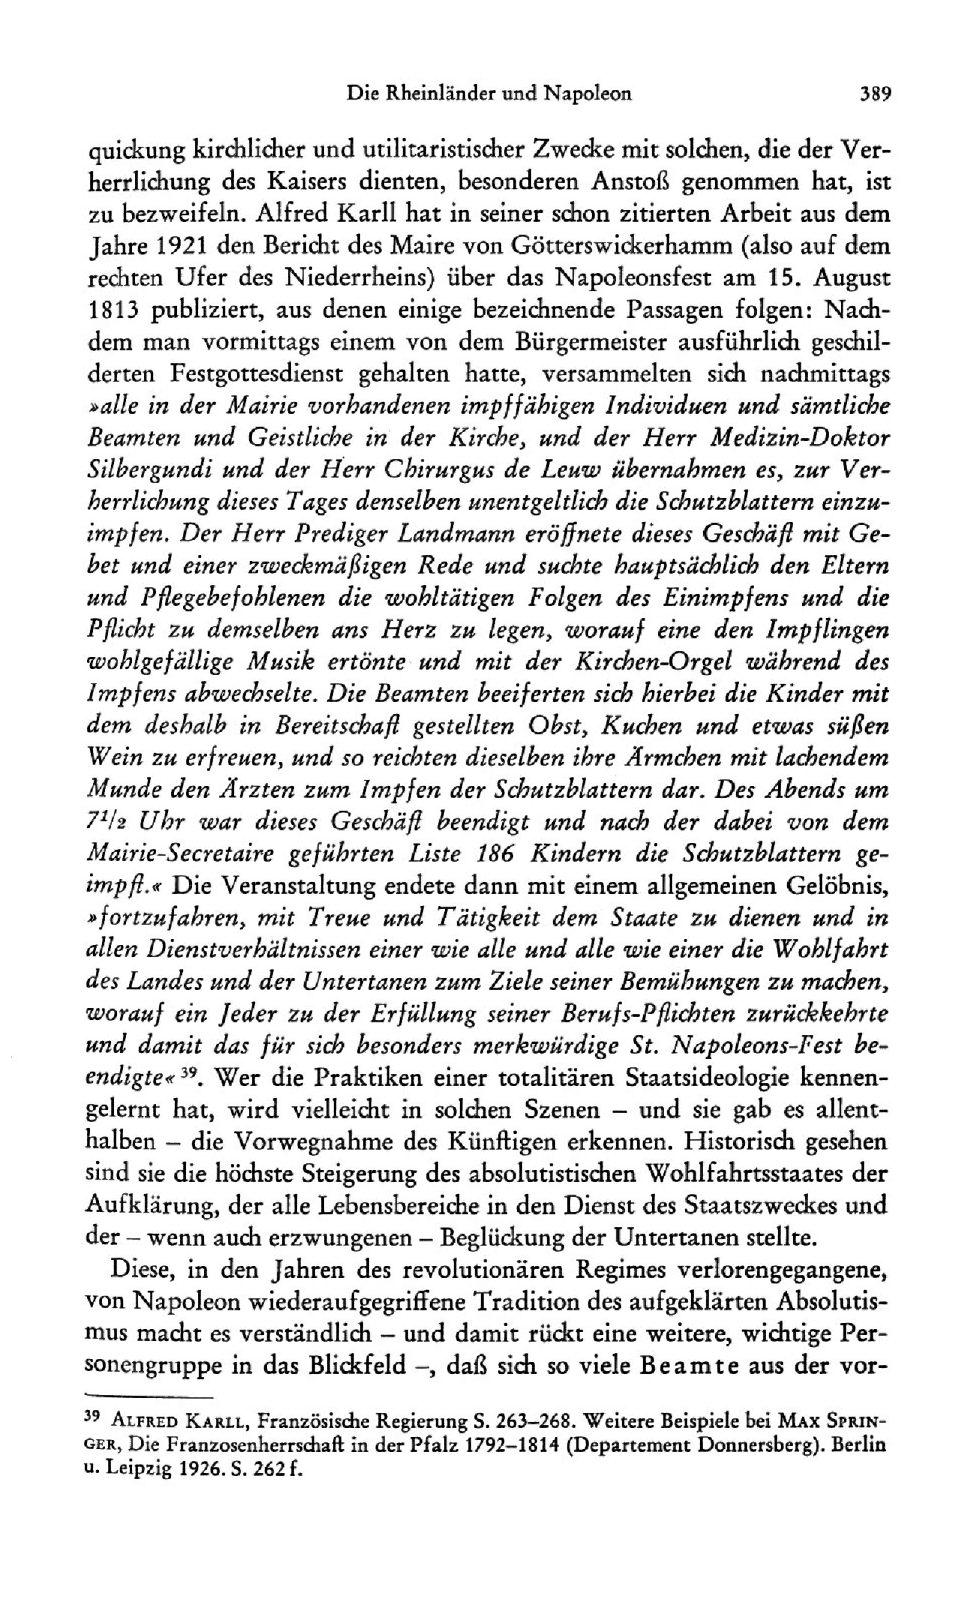 Die Rheinländer und Napoleon 389 quickung kirchlicher und utilitaristischer Zwecke mit solchen, die der Verherrlichung des Kaisers dienten, besonderen Anstoß genommen hat, ist zu bezweifeln.